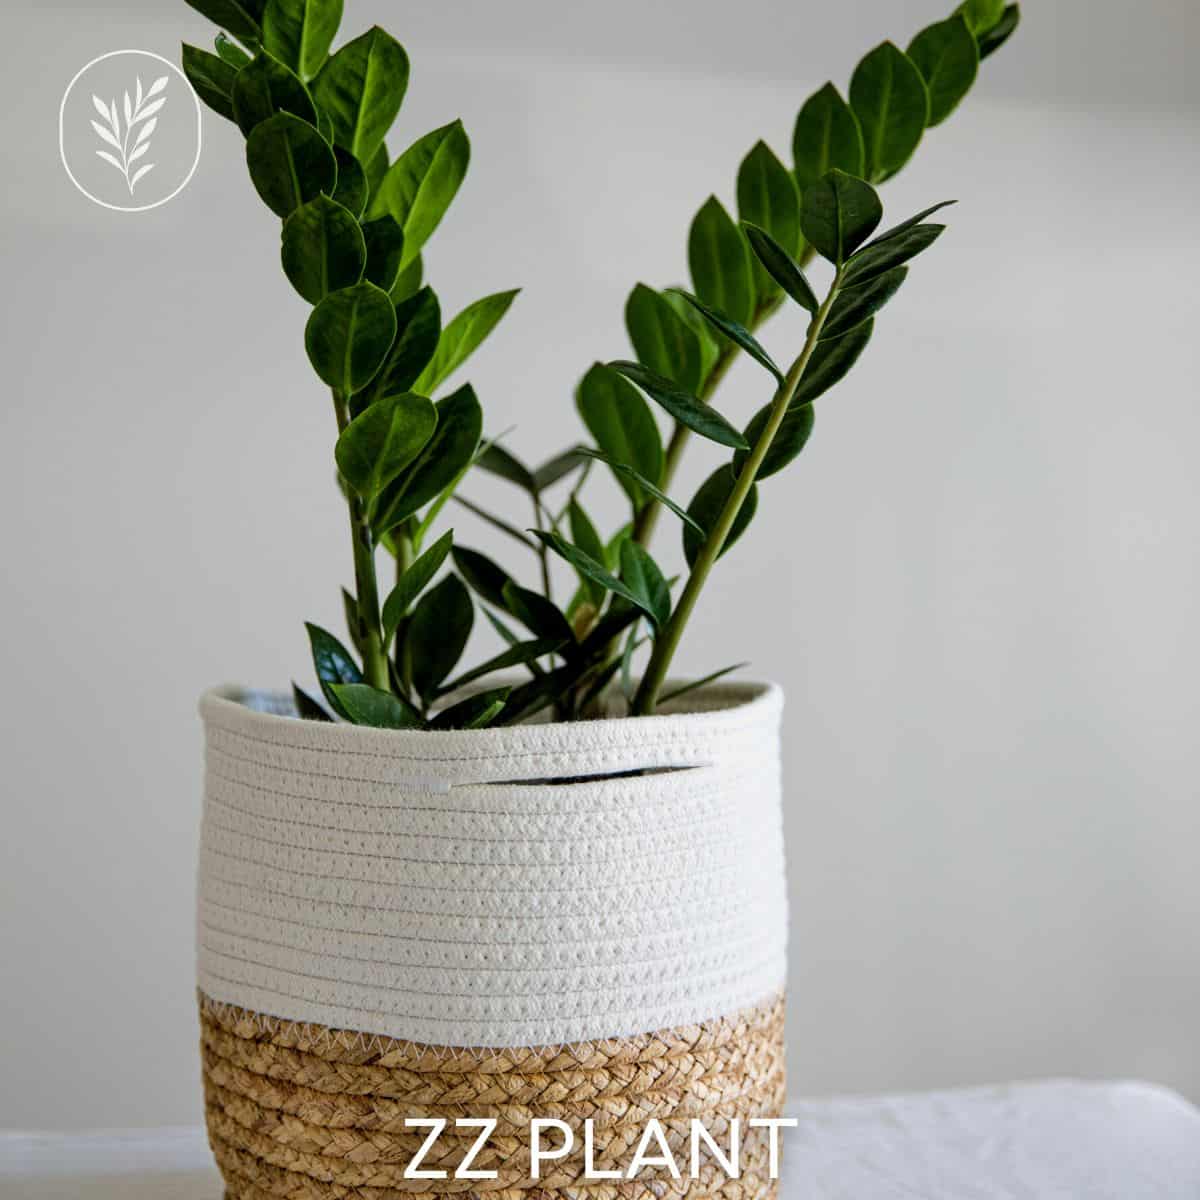 Zz plant via @home4theharvest